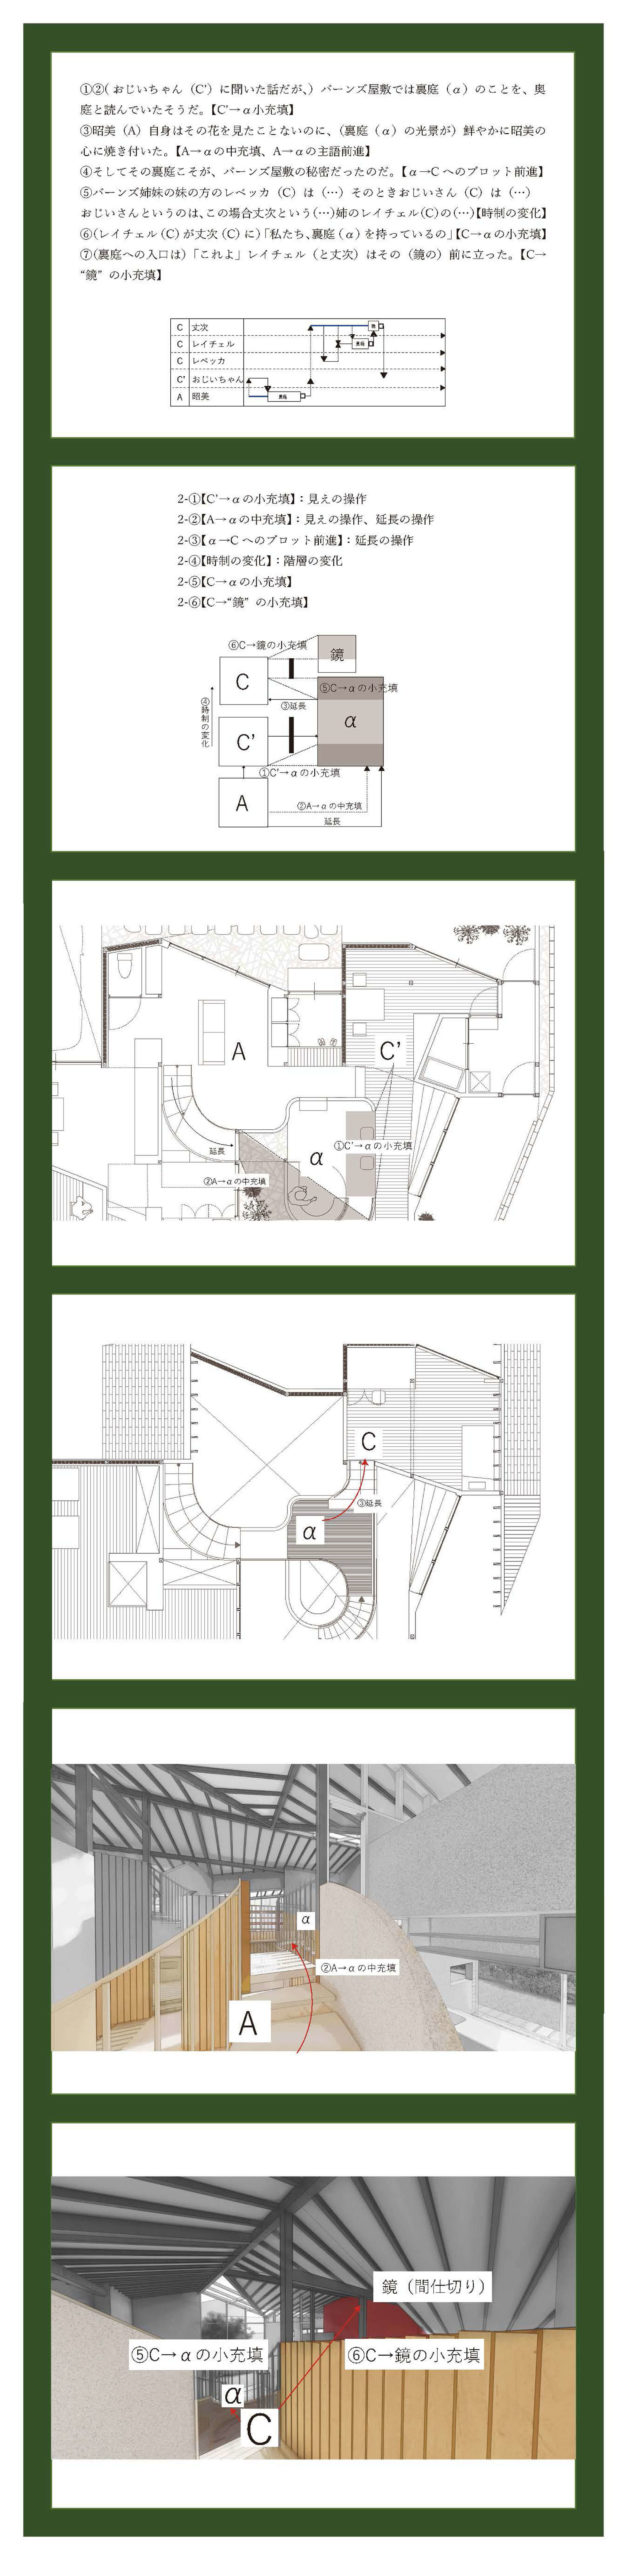 小説構造を応用した建築の提案 -梨木香歩『裏庭』の分析を通して--4